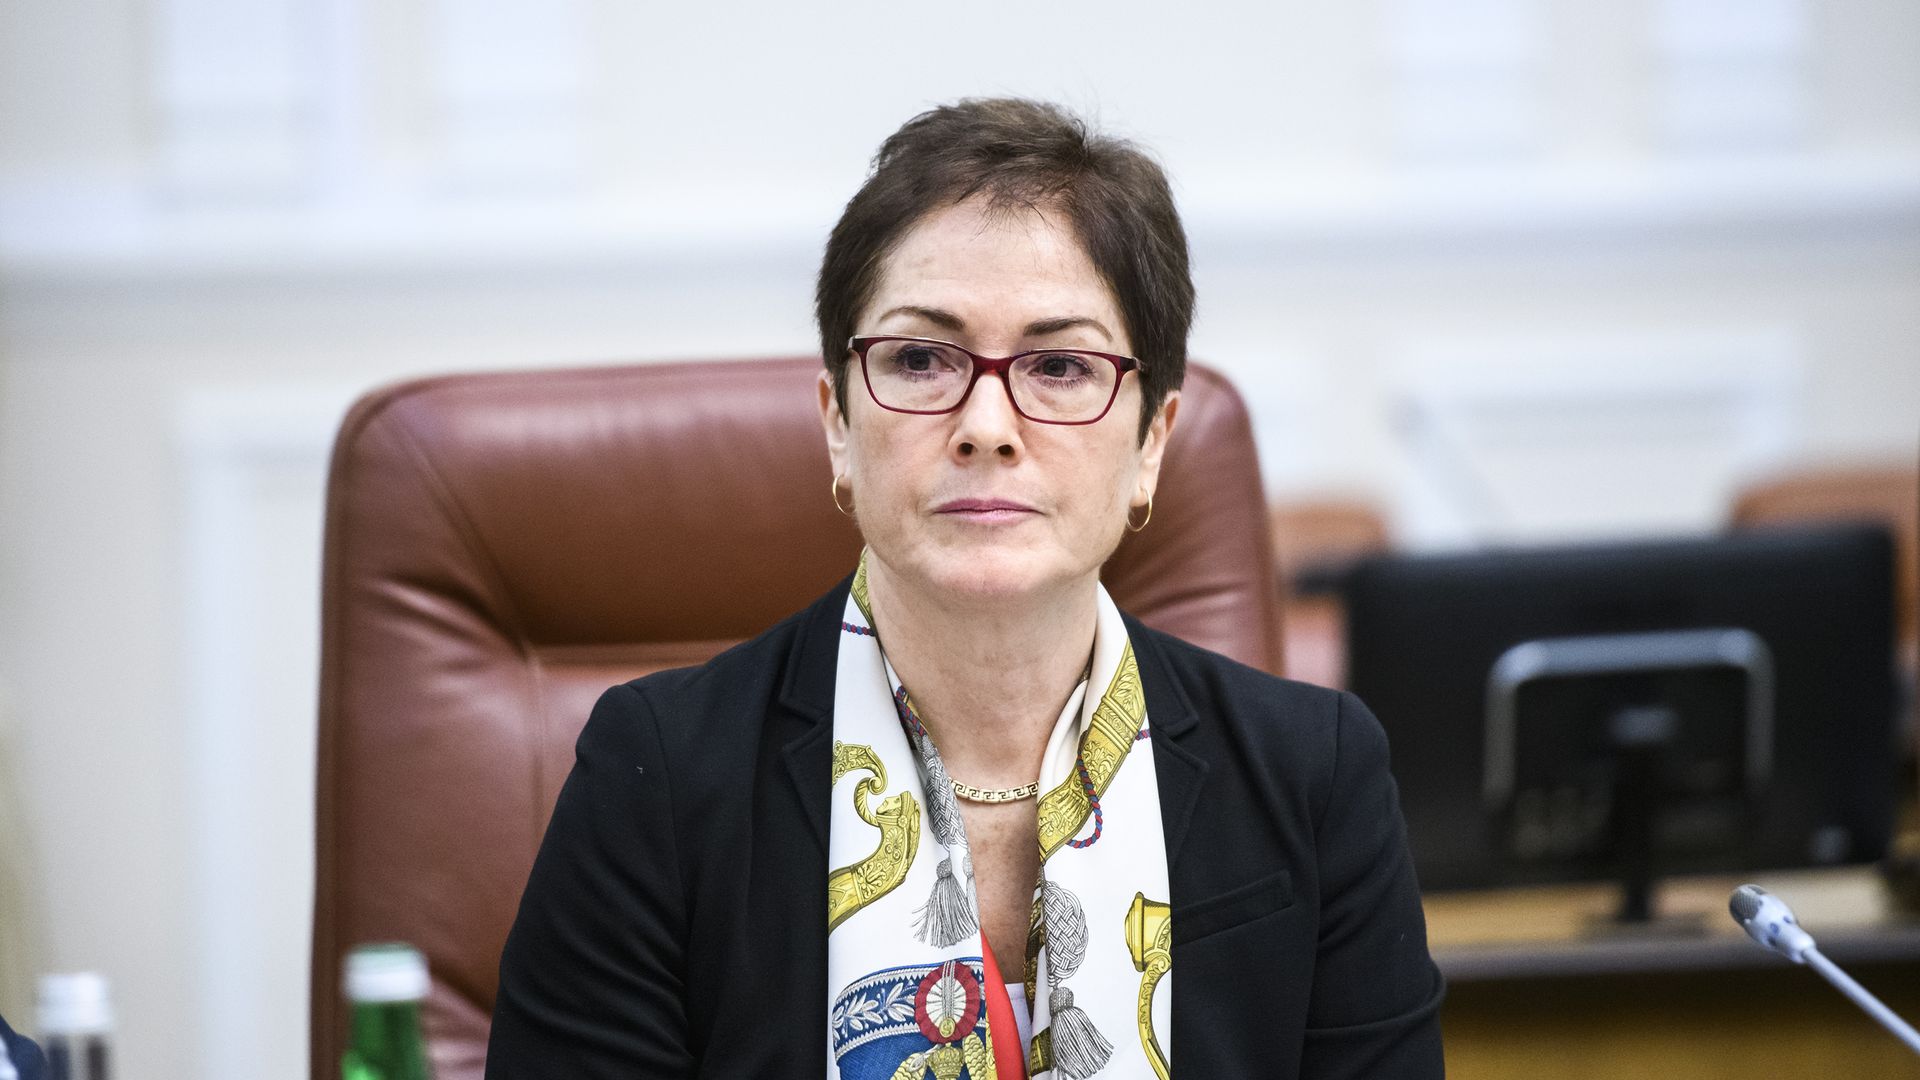 Marie Yovanovitch